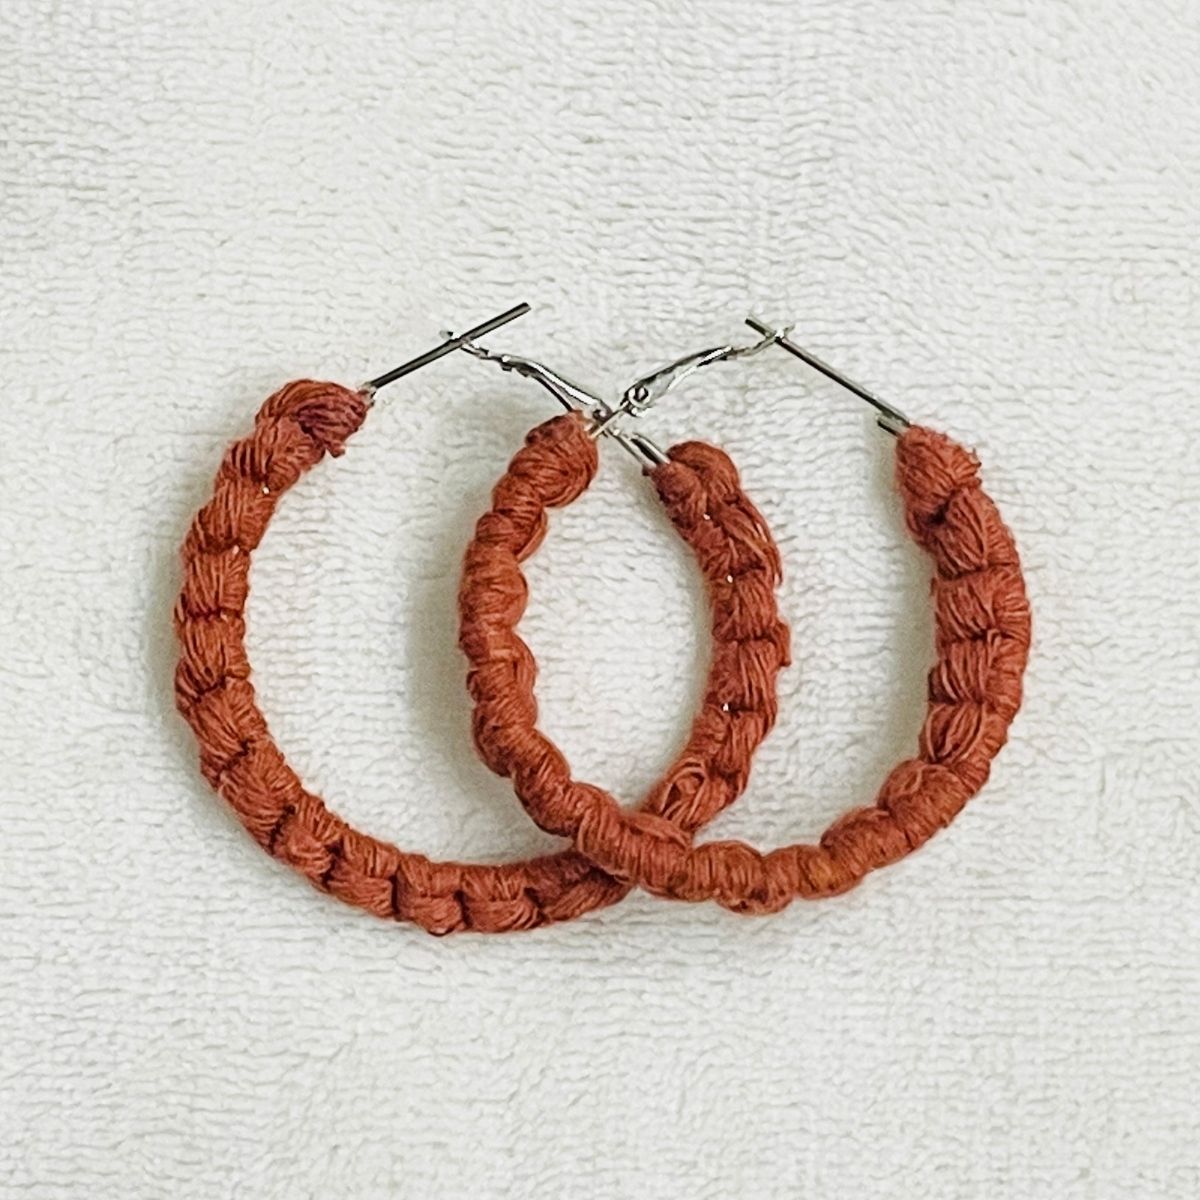 Boho Chic Macrame Earrings | Modish Hoop